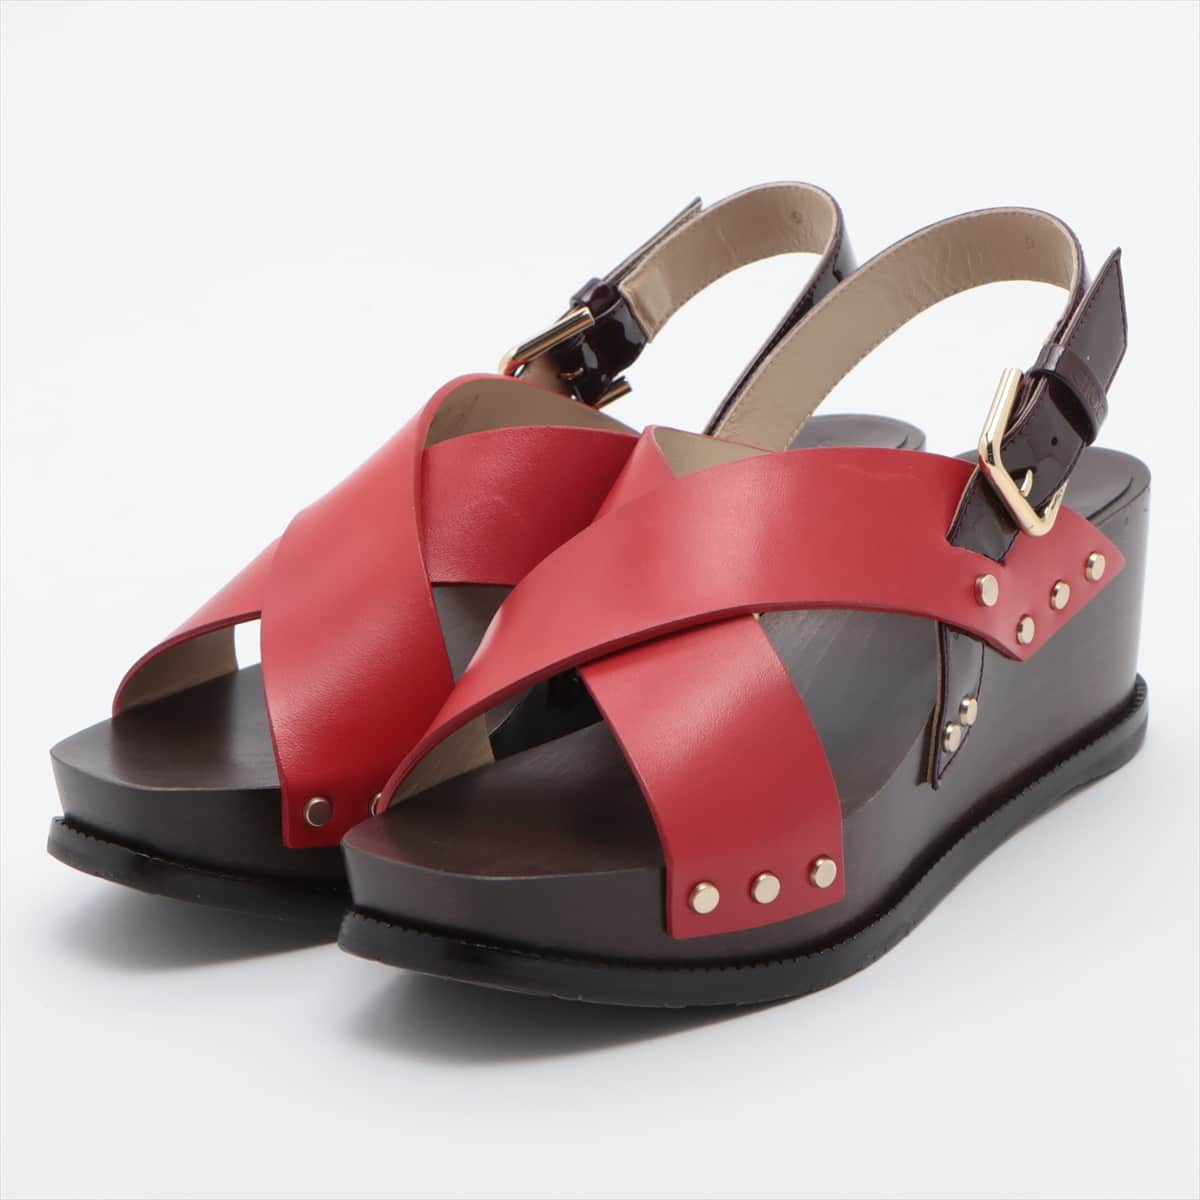 Jimmy Choo Leather x enamel Wedge Sole Sandals 36 Ladies' Red x brown